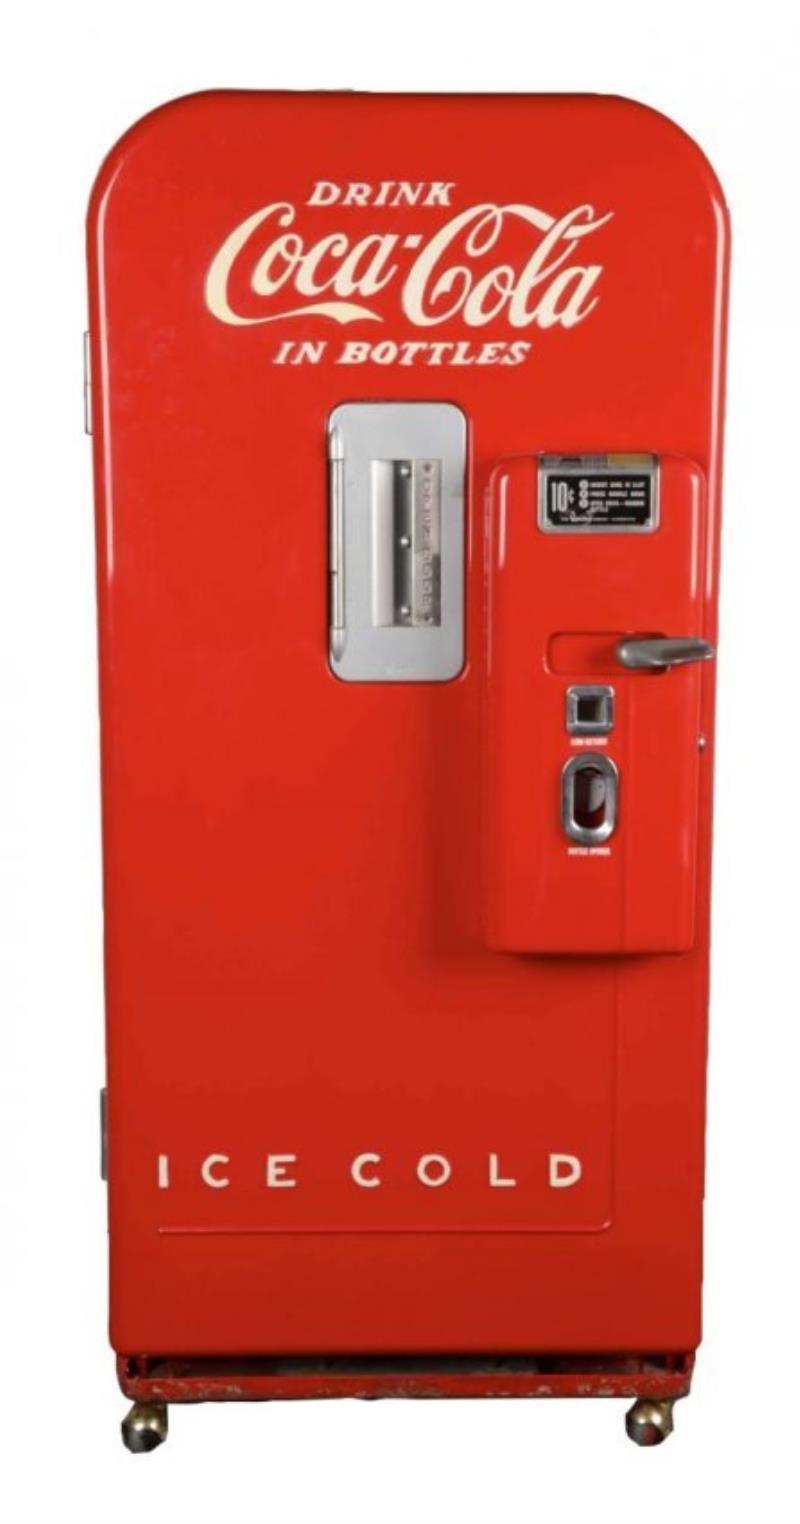 10¢ Vendo Model 39 Coca Cola Vending Machine